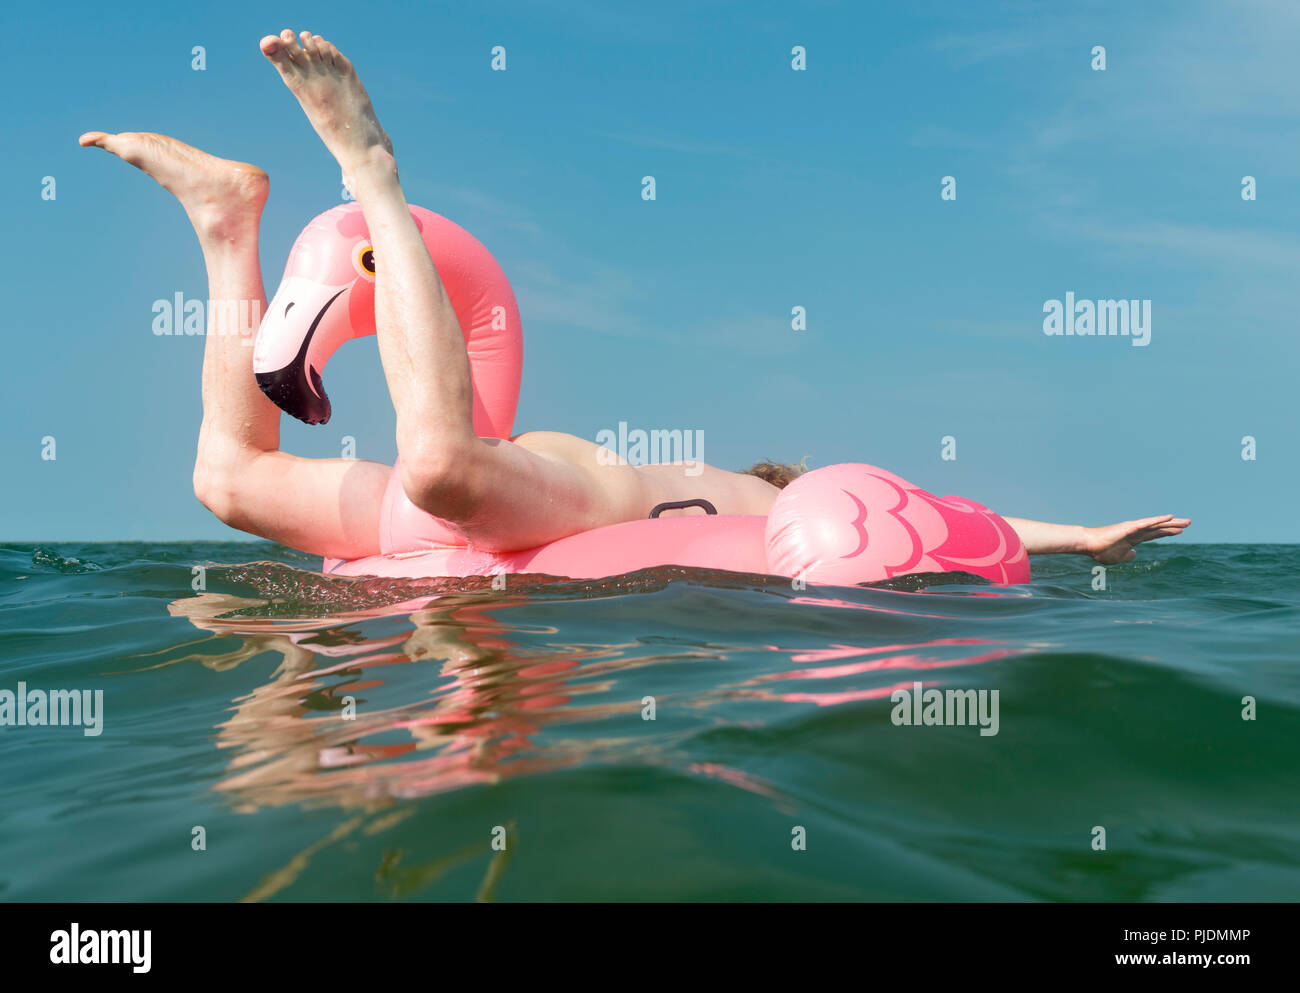 Luomo nudo giocando sulla flamingo gonfiabile in mare Foto Stock